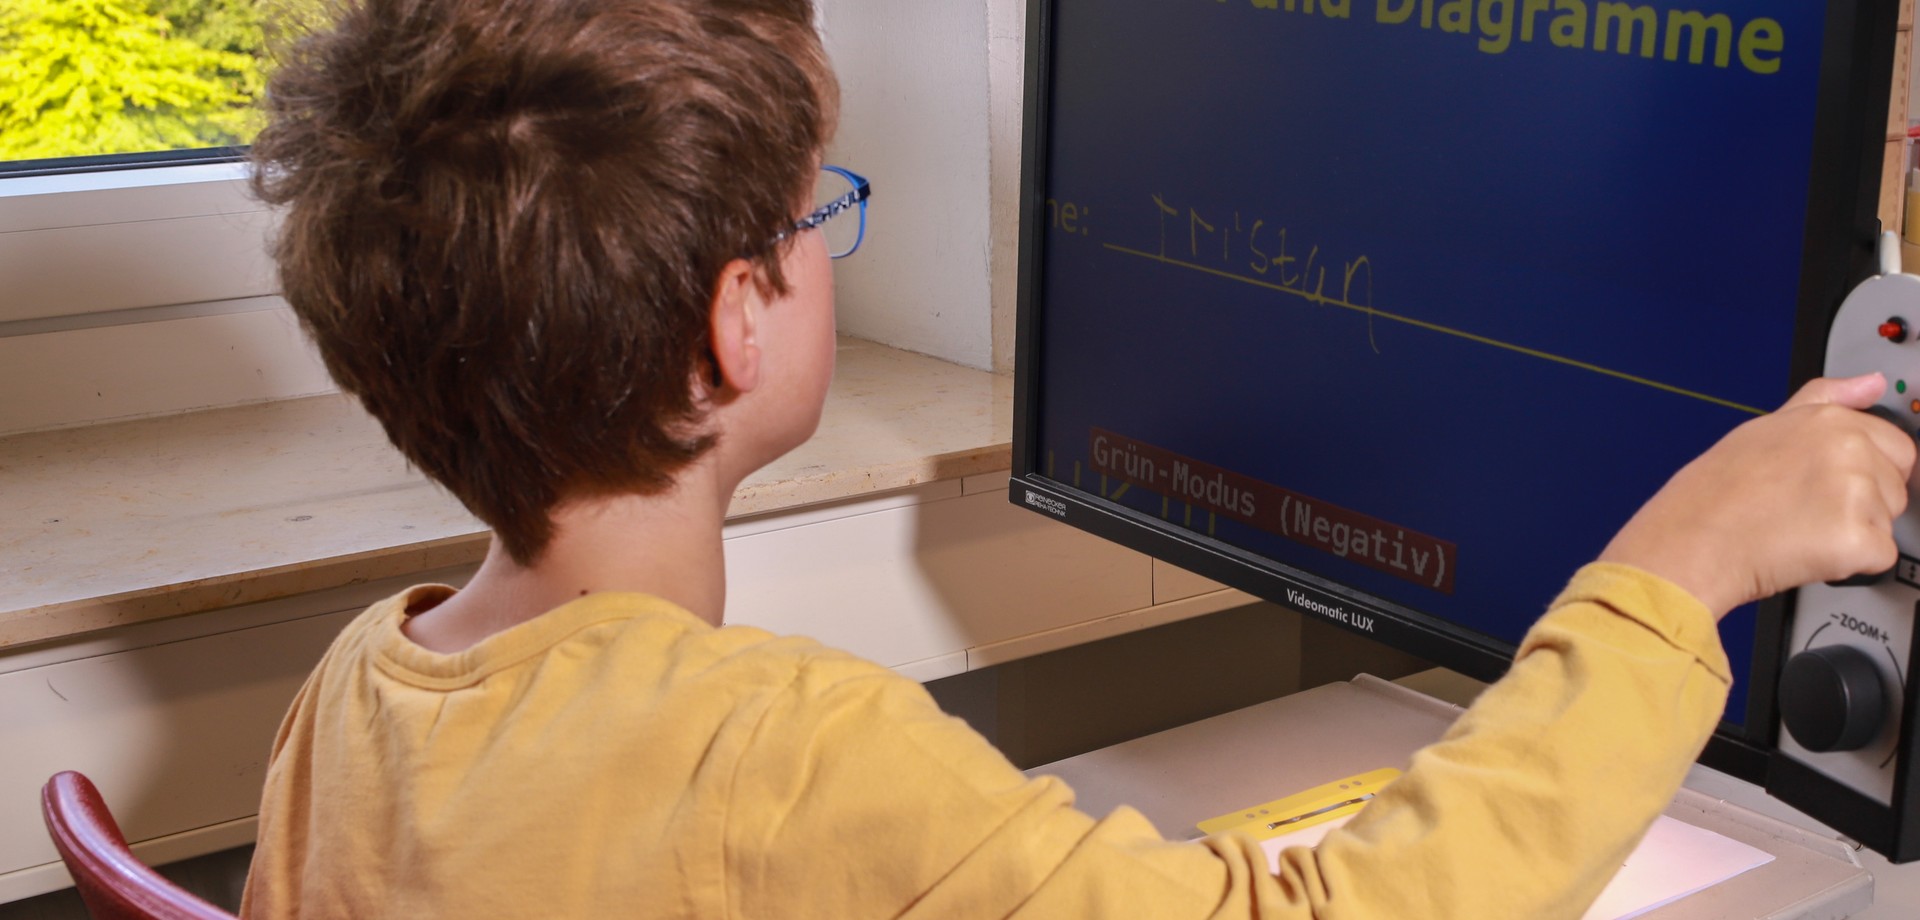 Ein Schüler bedient einen Monitor